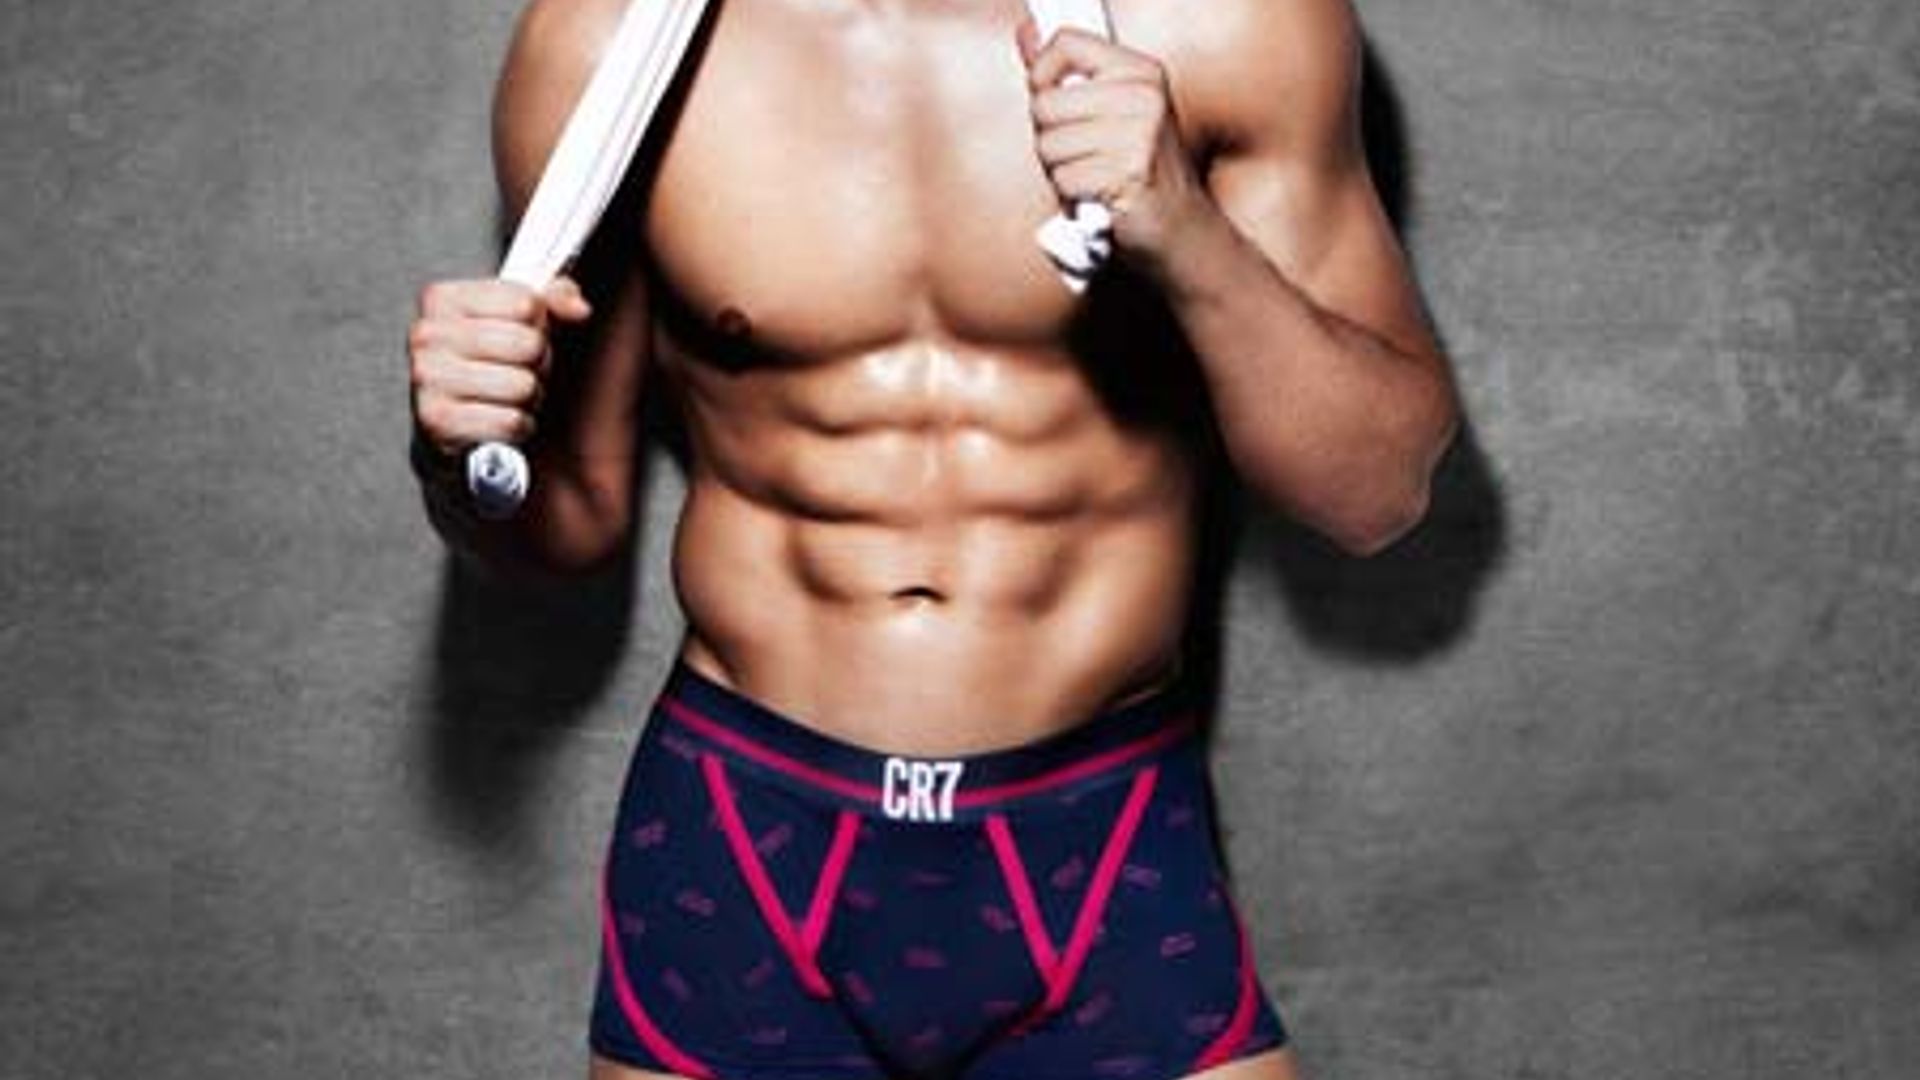 Cristiano Ronaldo Flexes His Muscles in His CR7 Underwear Campaign